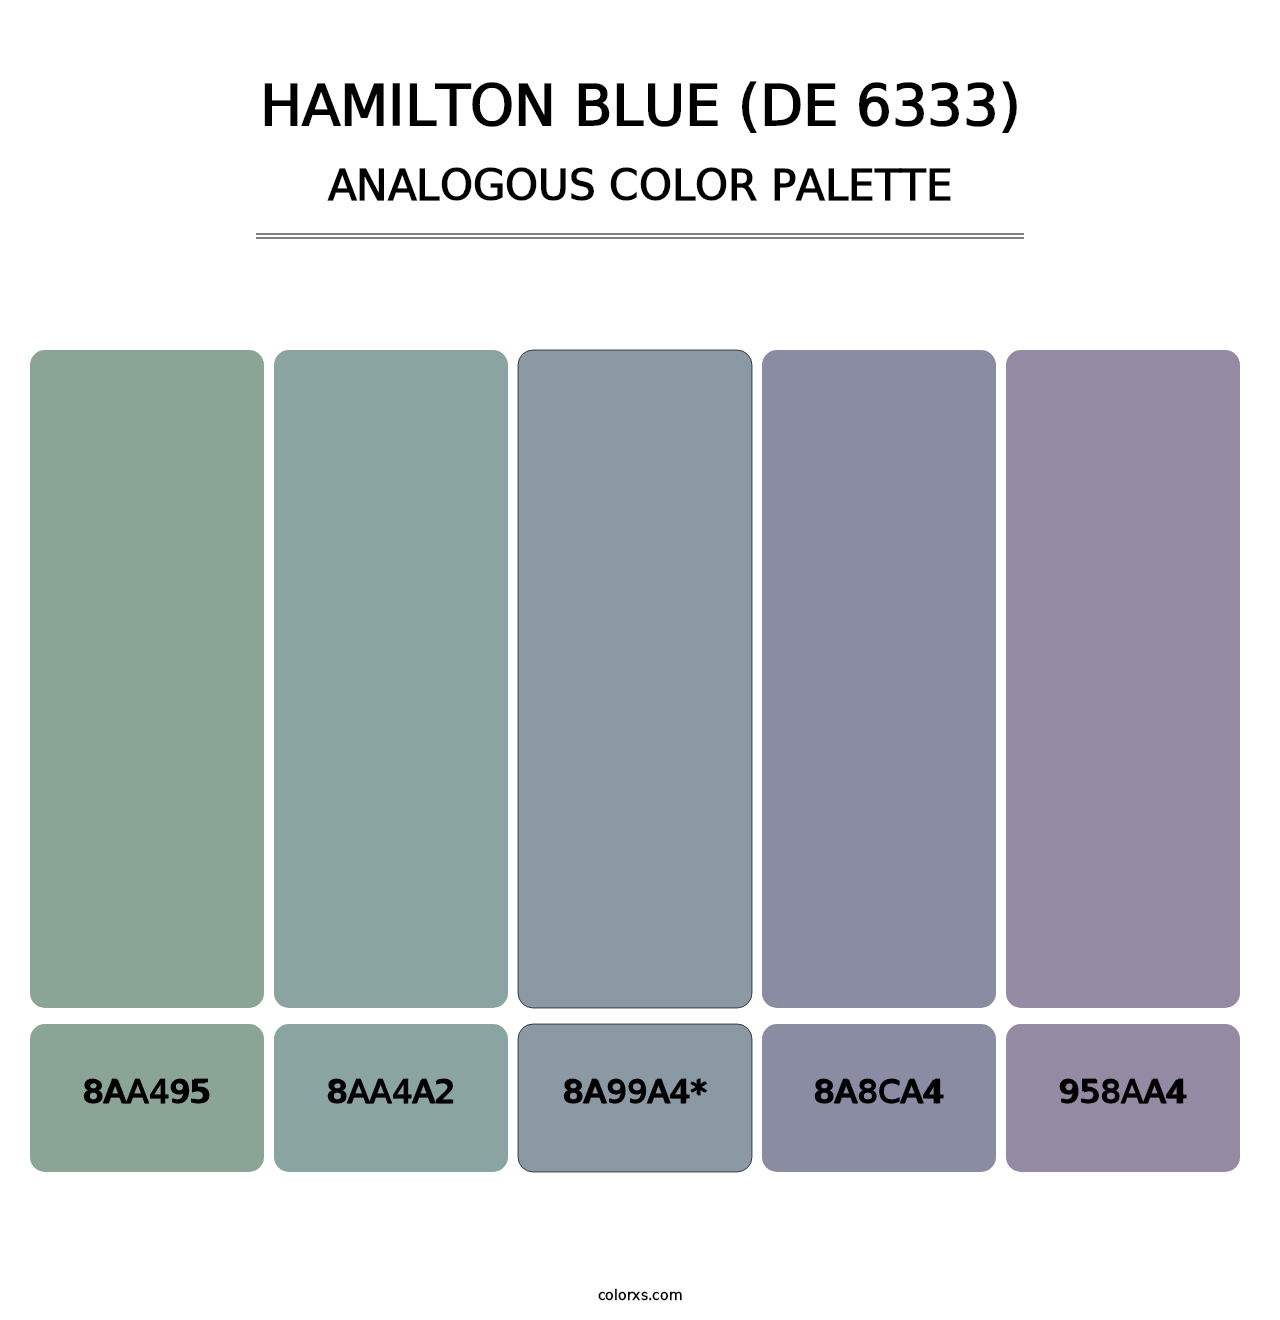 Hamilton Blue (DE 6333) - Analogous Color Palette